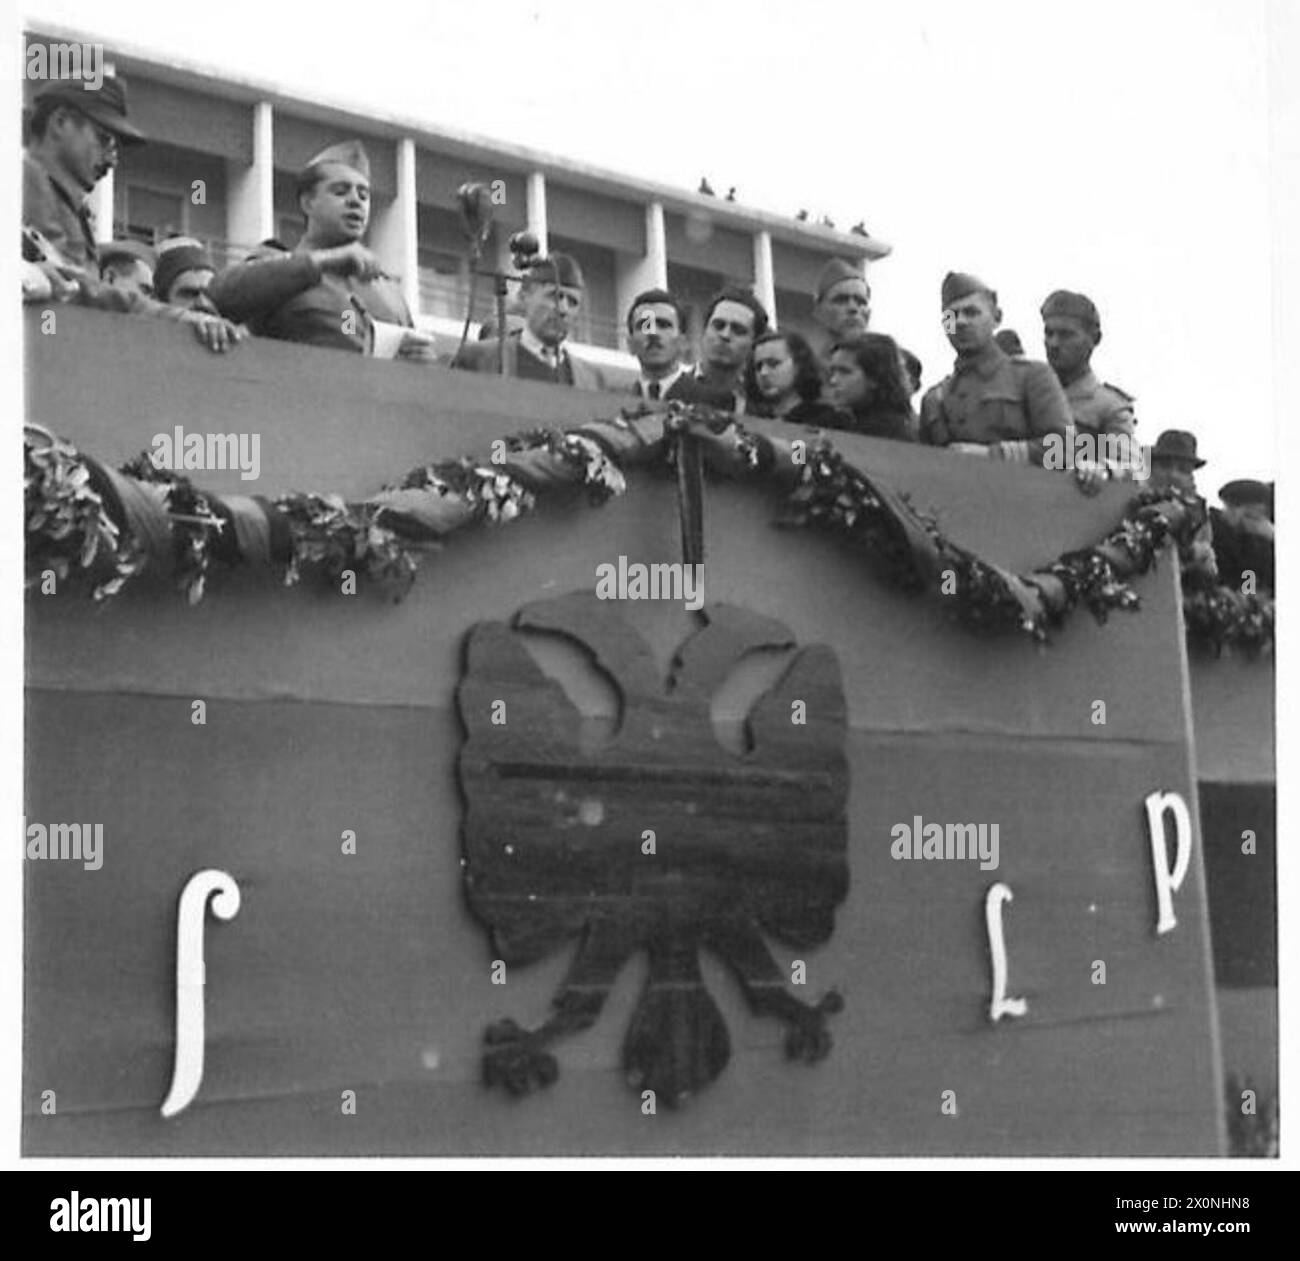 JOUR DE L'INDÉPENDANCE EN ALBANIE - Colonel-général Enver Hoxha, C-in-C A.N.L.A., s'adressant à la population. Négatif photographique, Armée britannique Banque D'Images